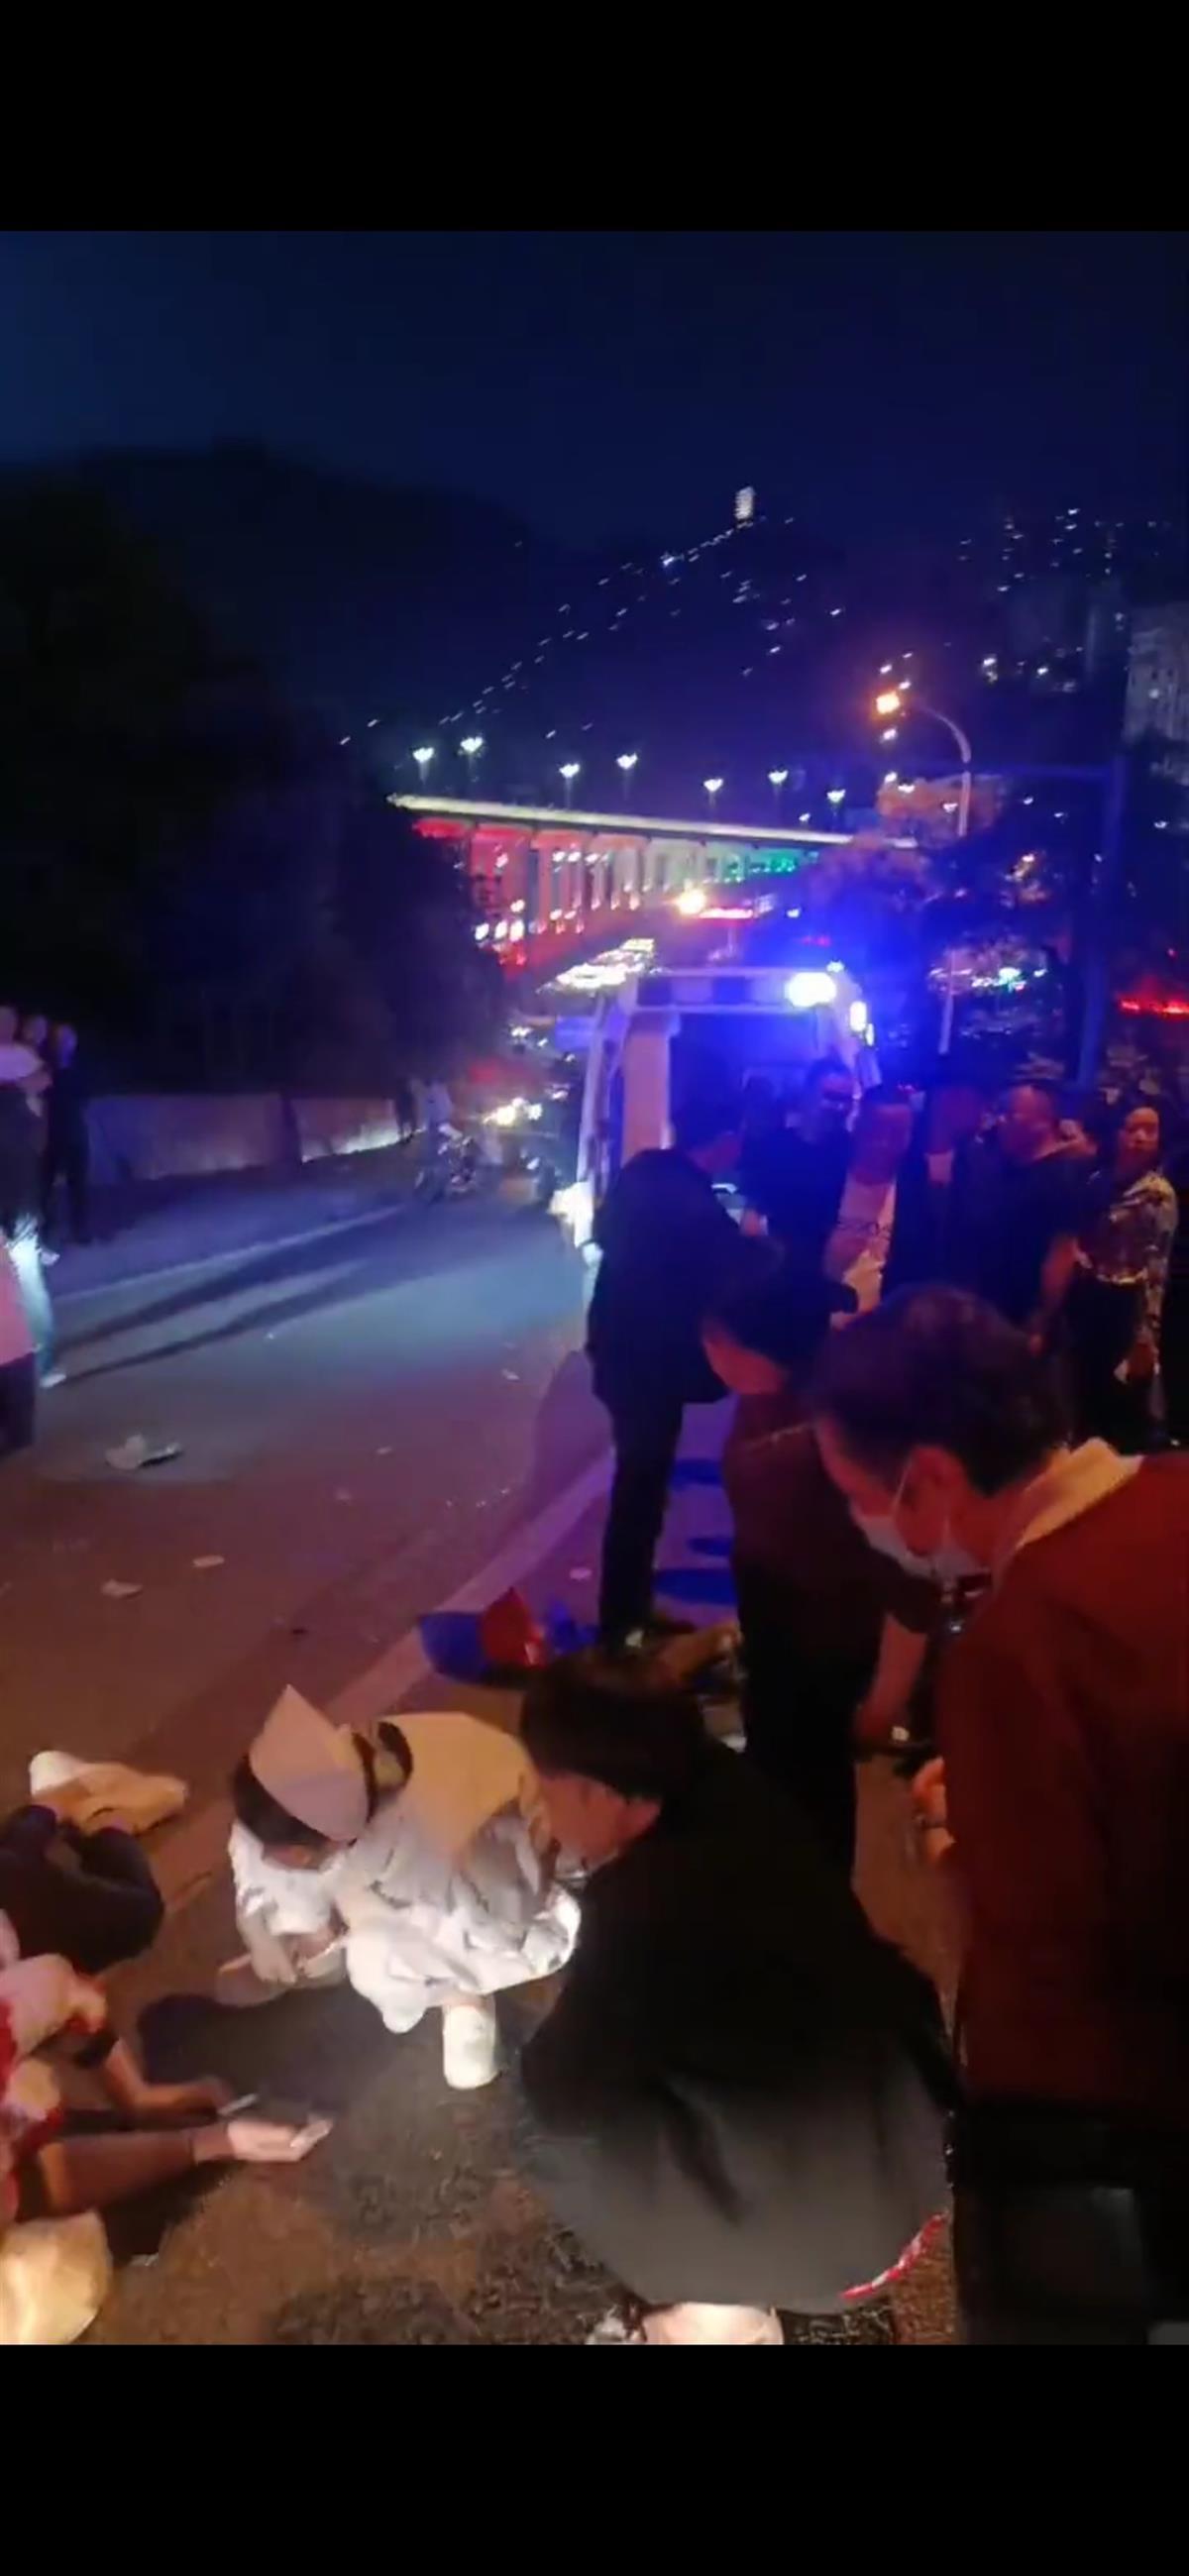 重庆一隧道发生摩托车车祸 4人死亡,究竟是怎么一回事?